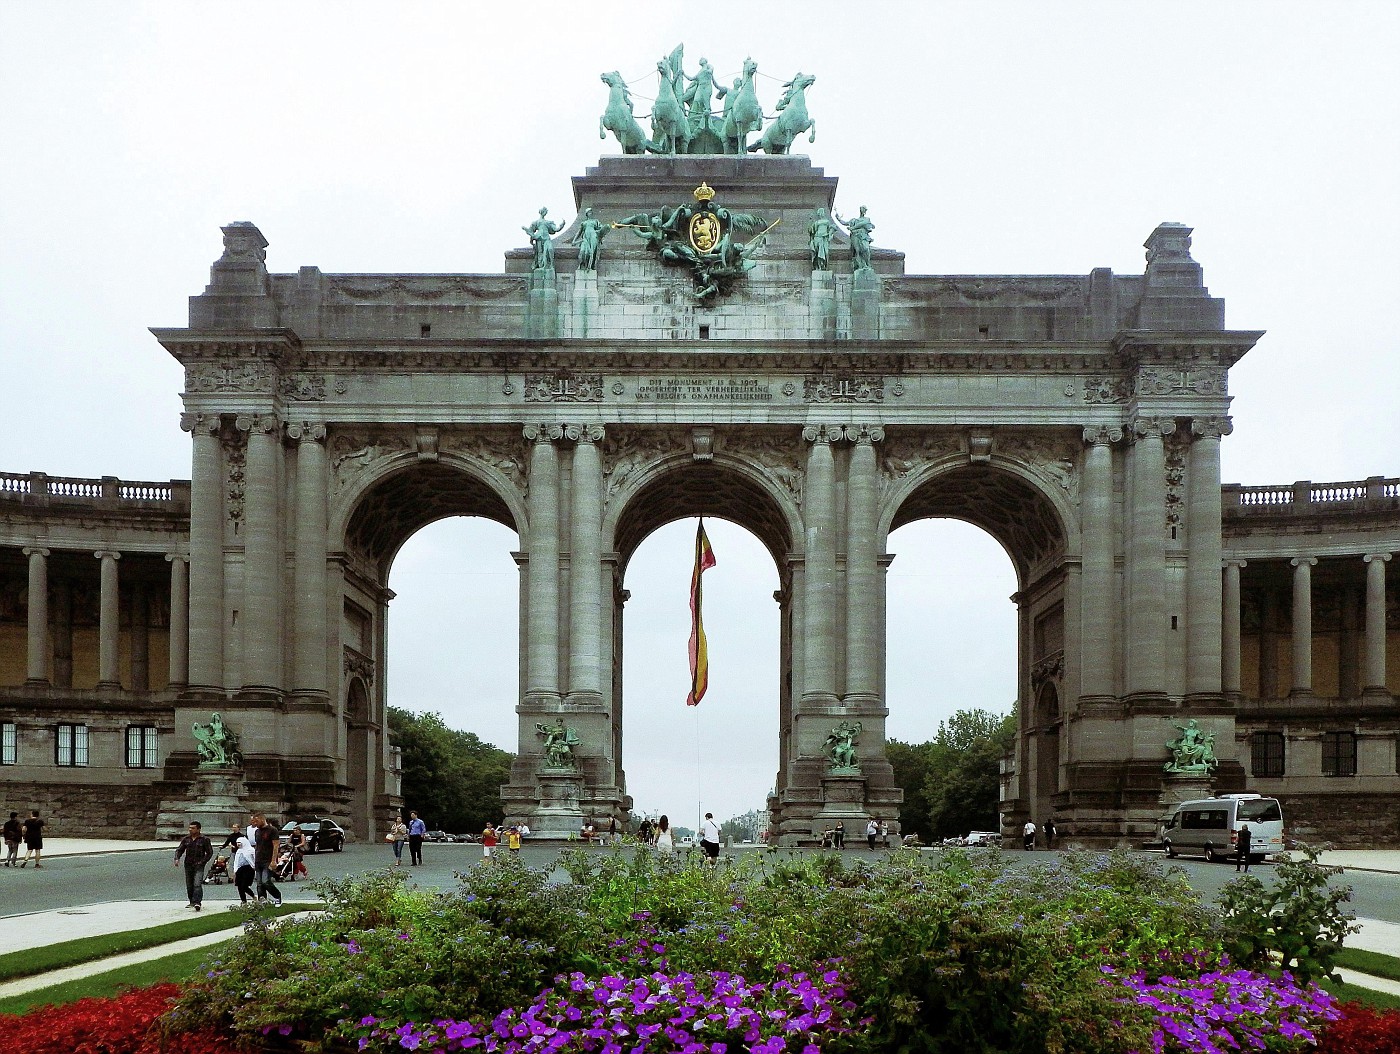 Arc de Triomphe / Triumphbogen